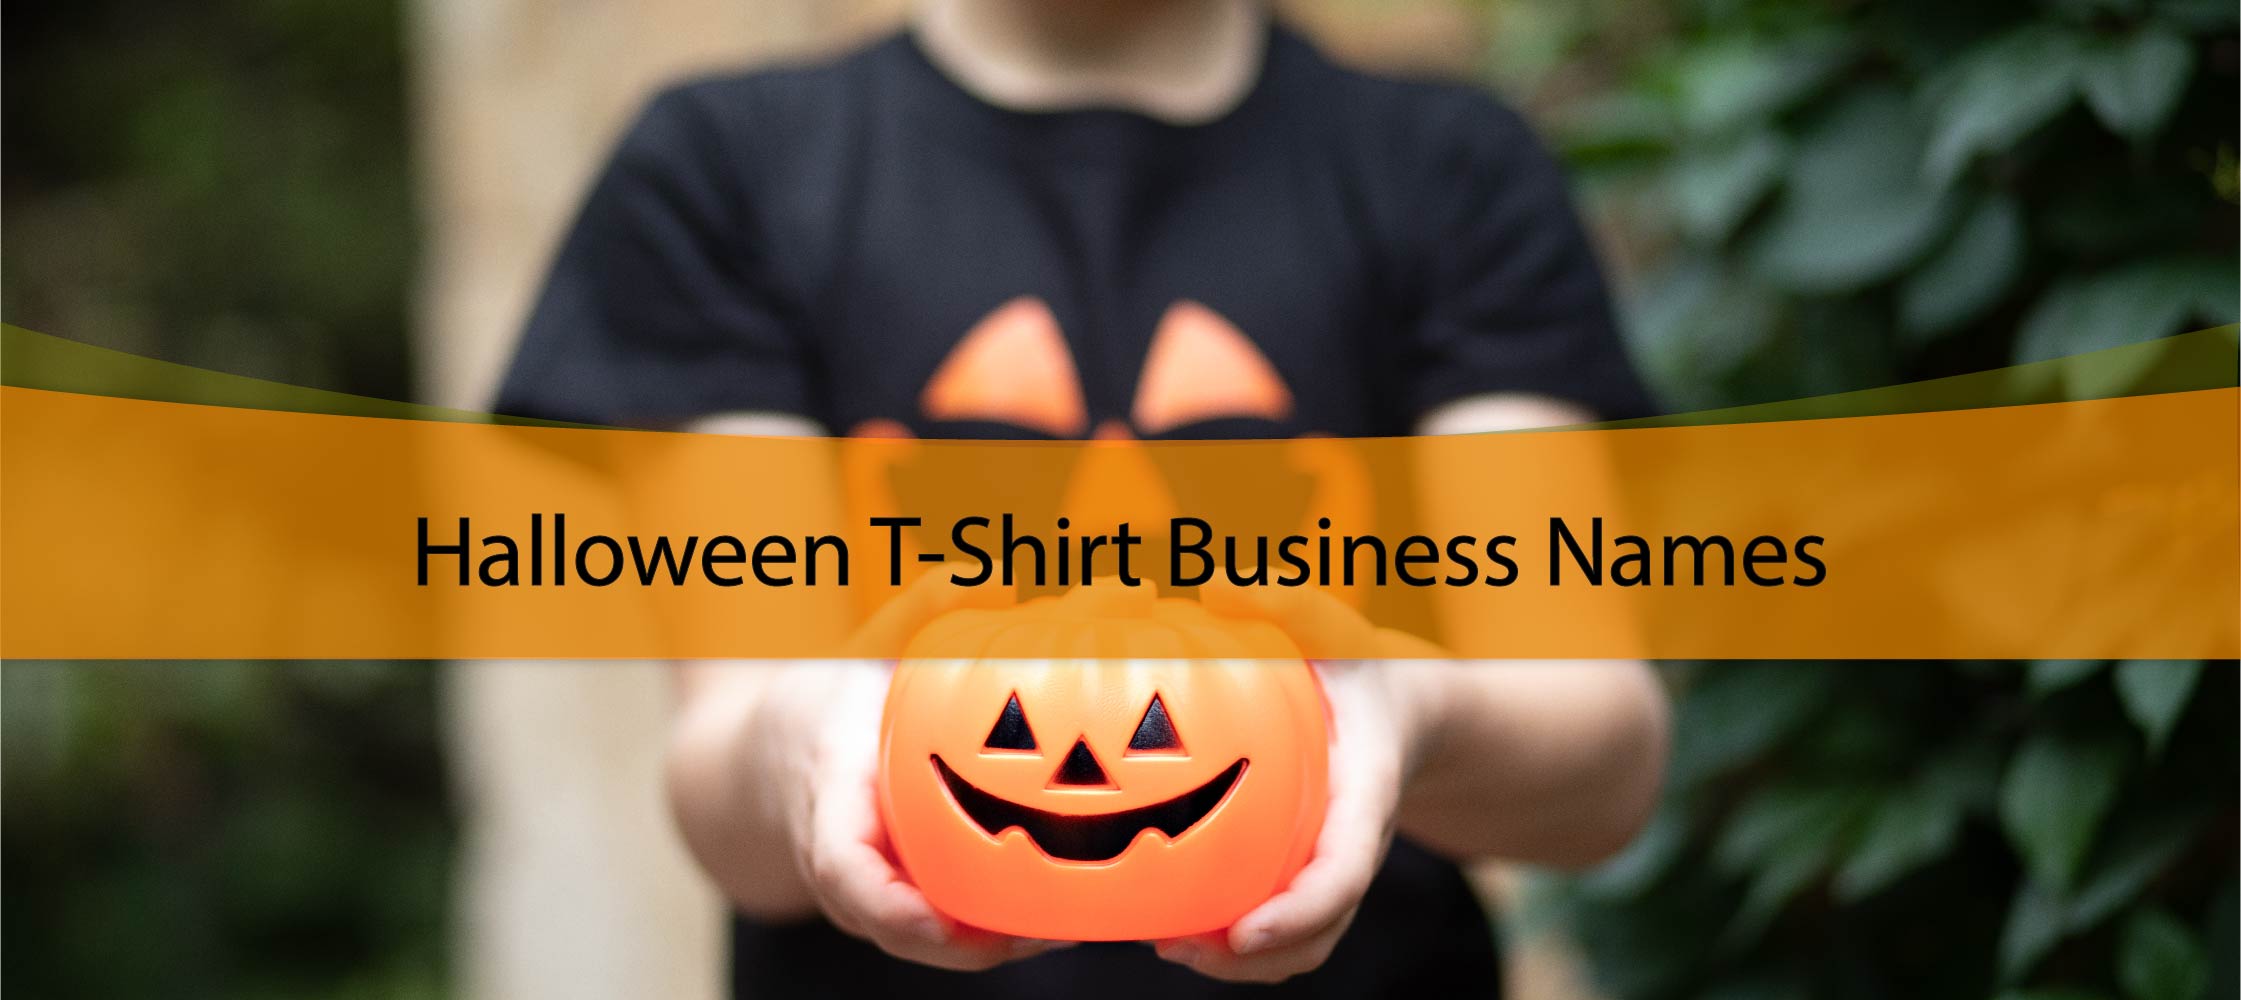 Halloween T-Shirt Business Names